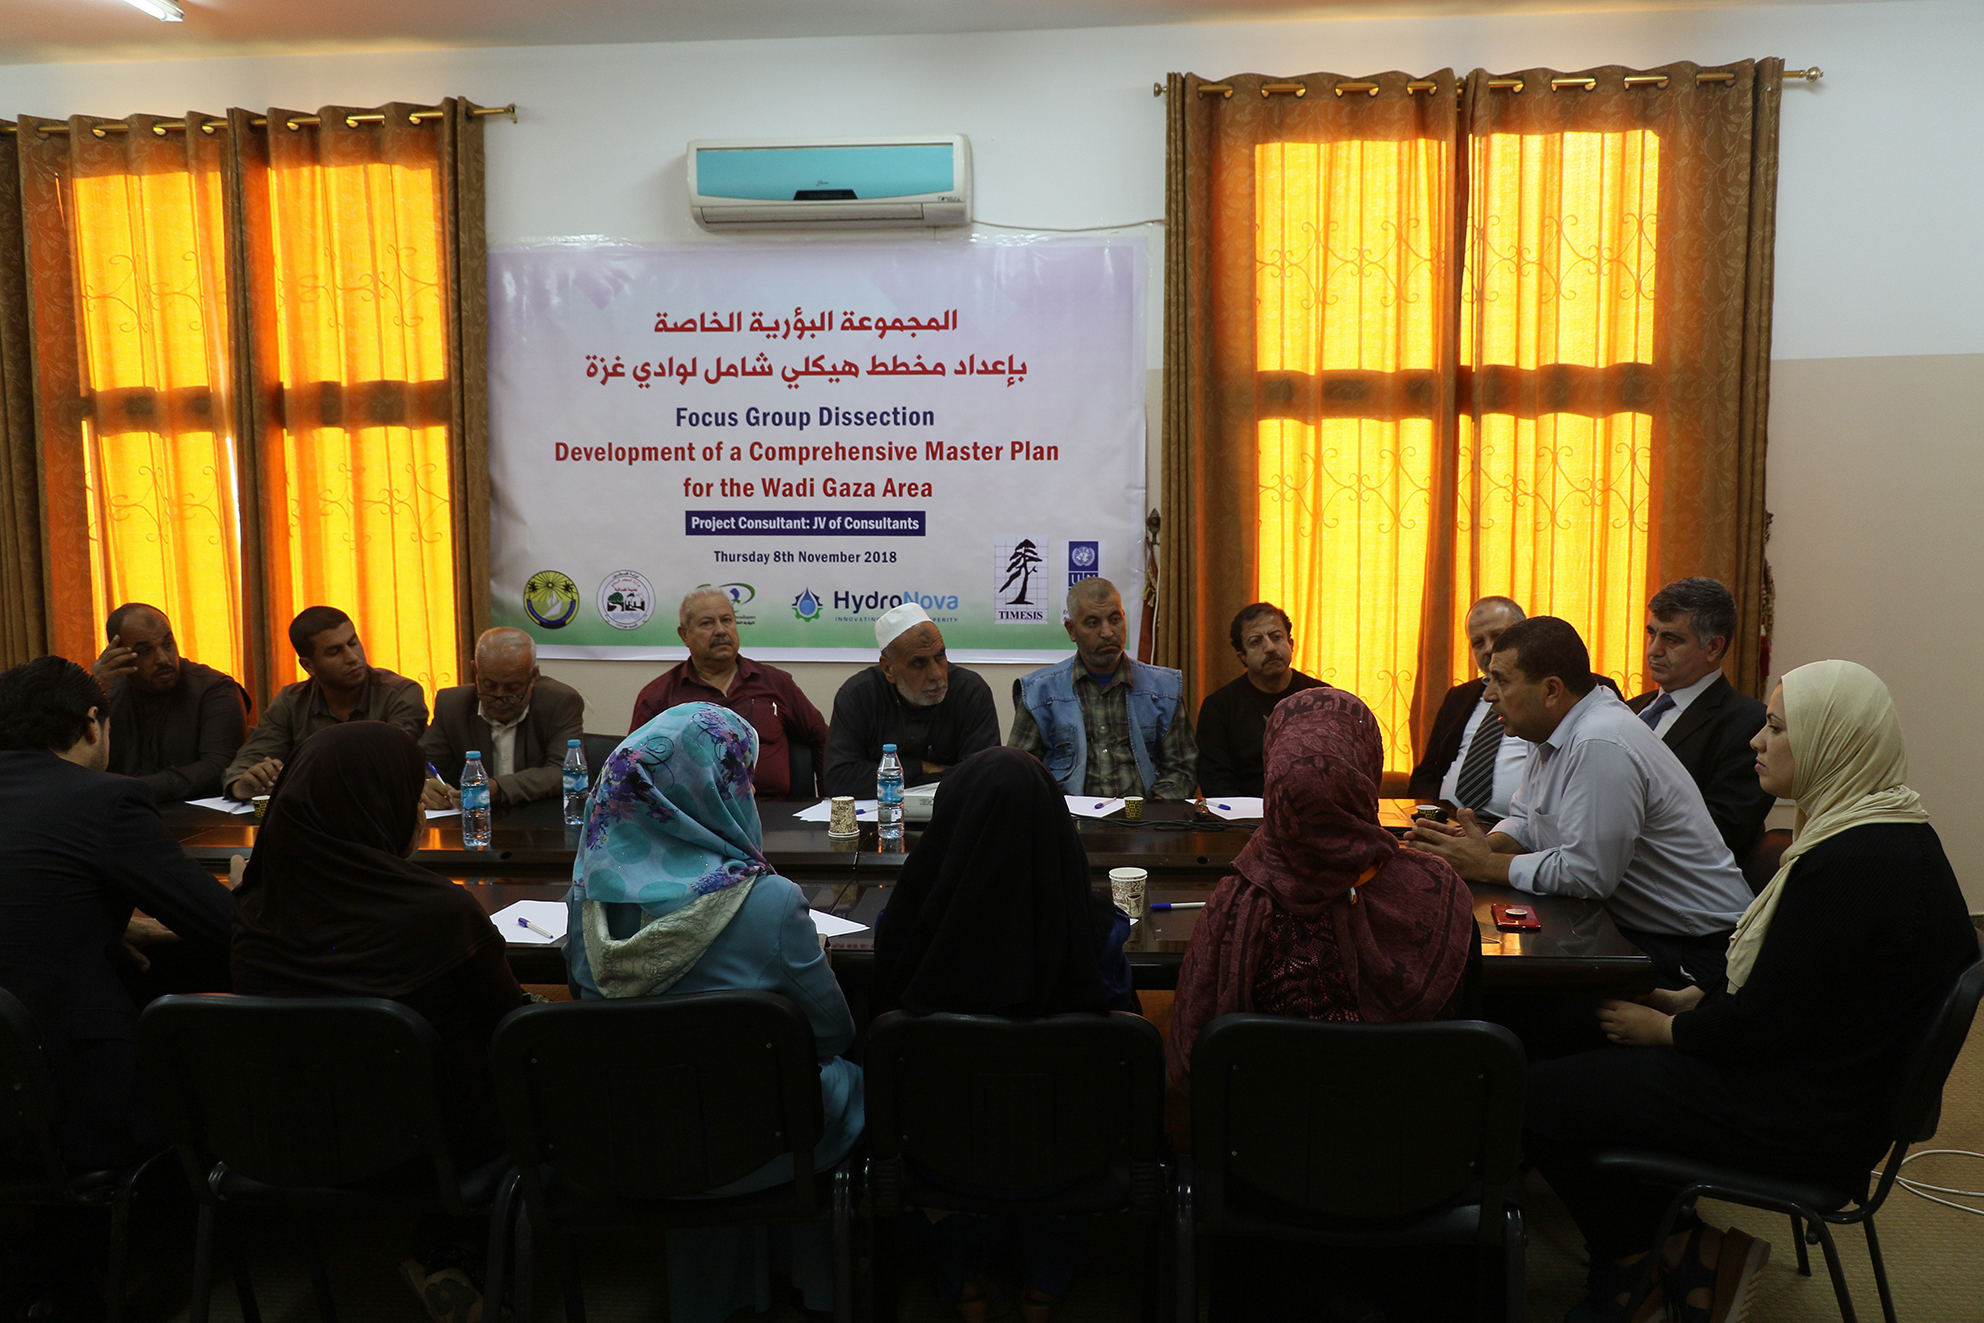 البلدية تستضيف لقاء مجتمعي حول إعداد مخطط هيكلي لوادي غزة